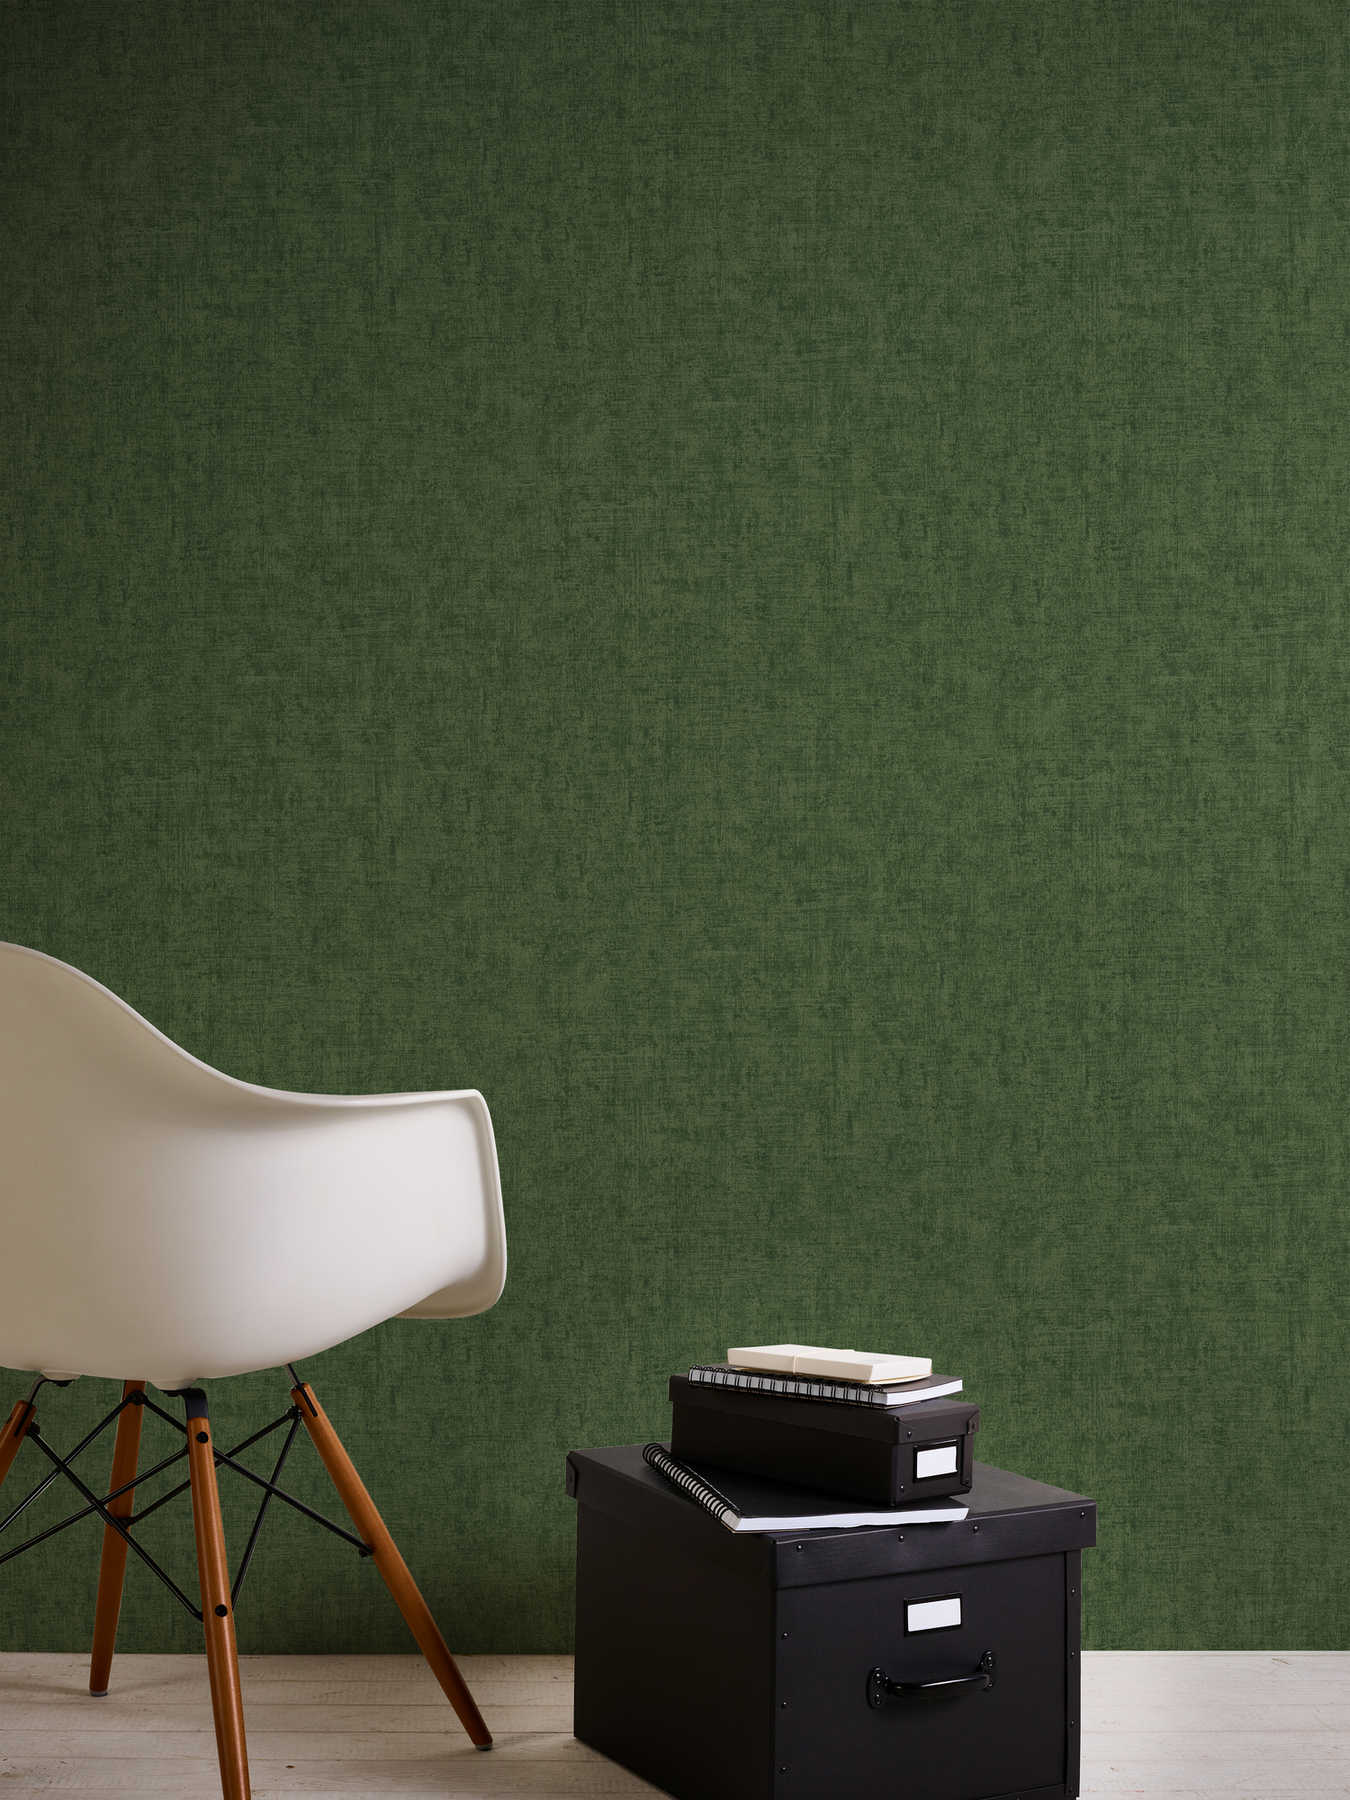             Papier peint uni vert jungle chiné avec gaufrage structuré
        